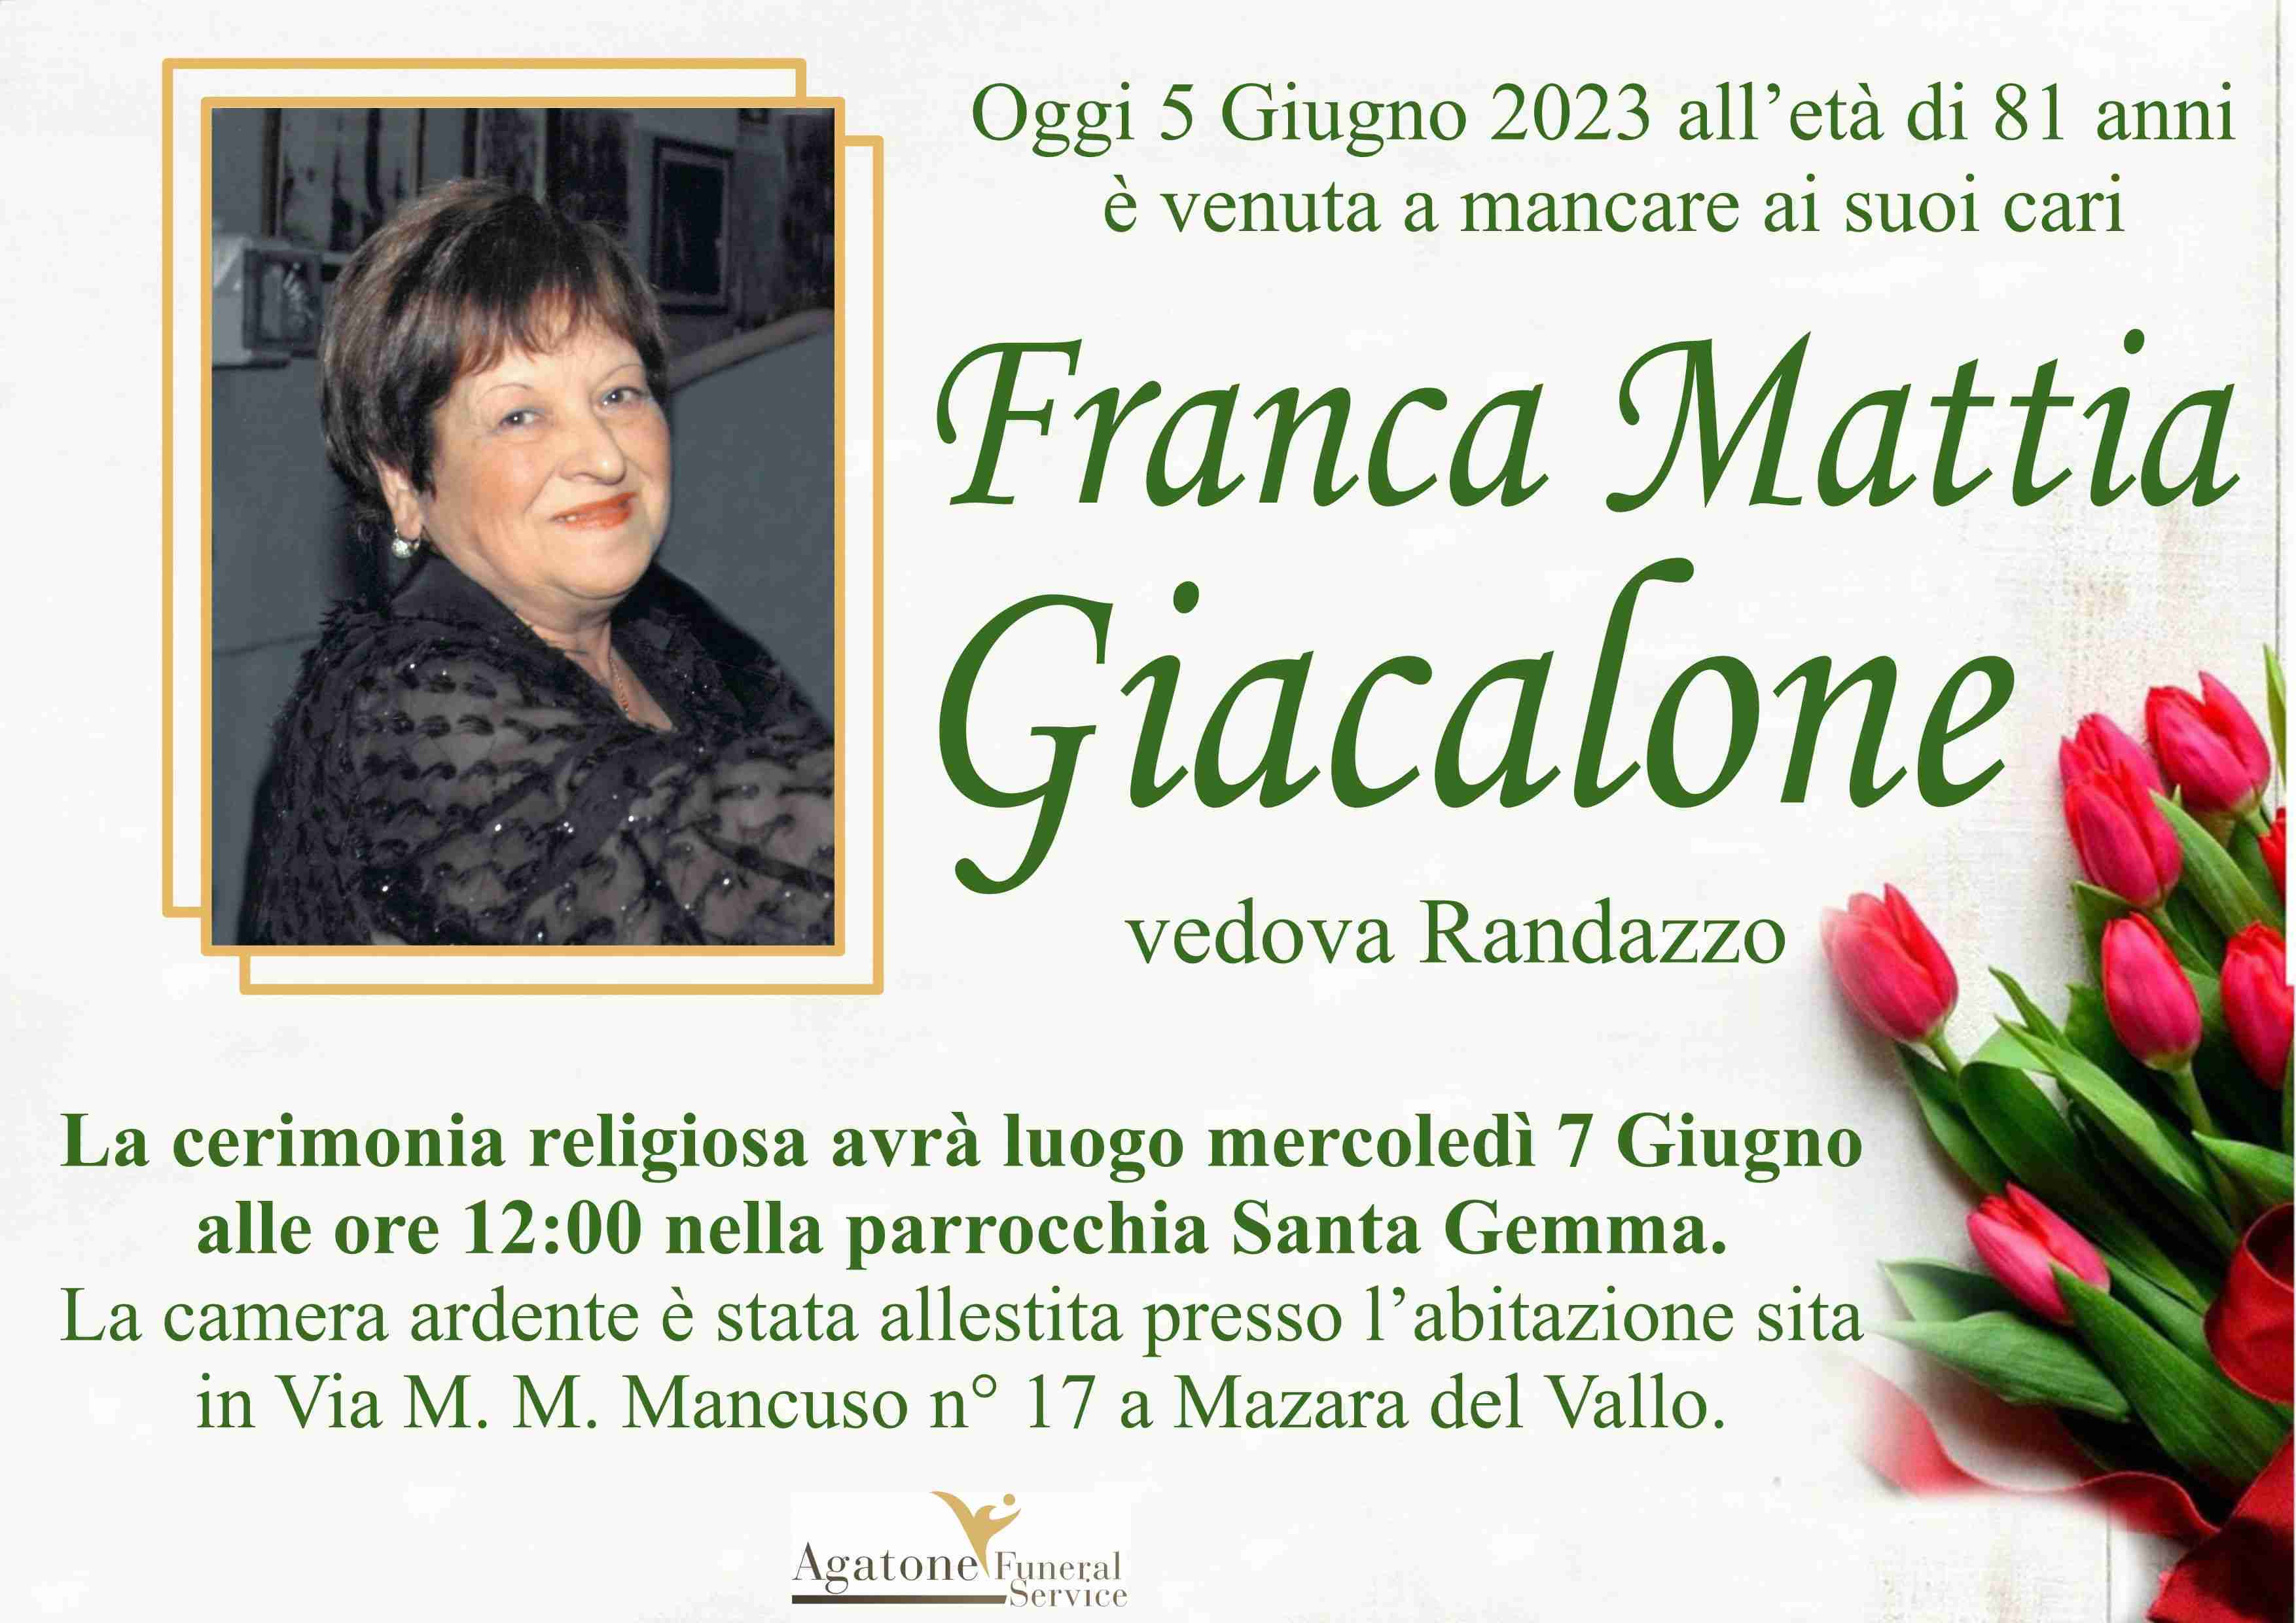 Franca Mattia Giacalone